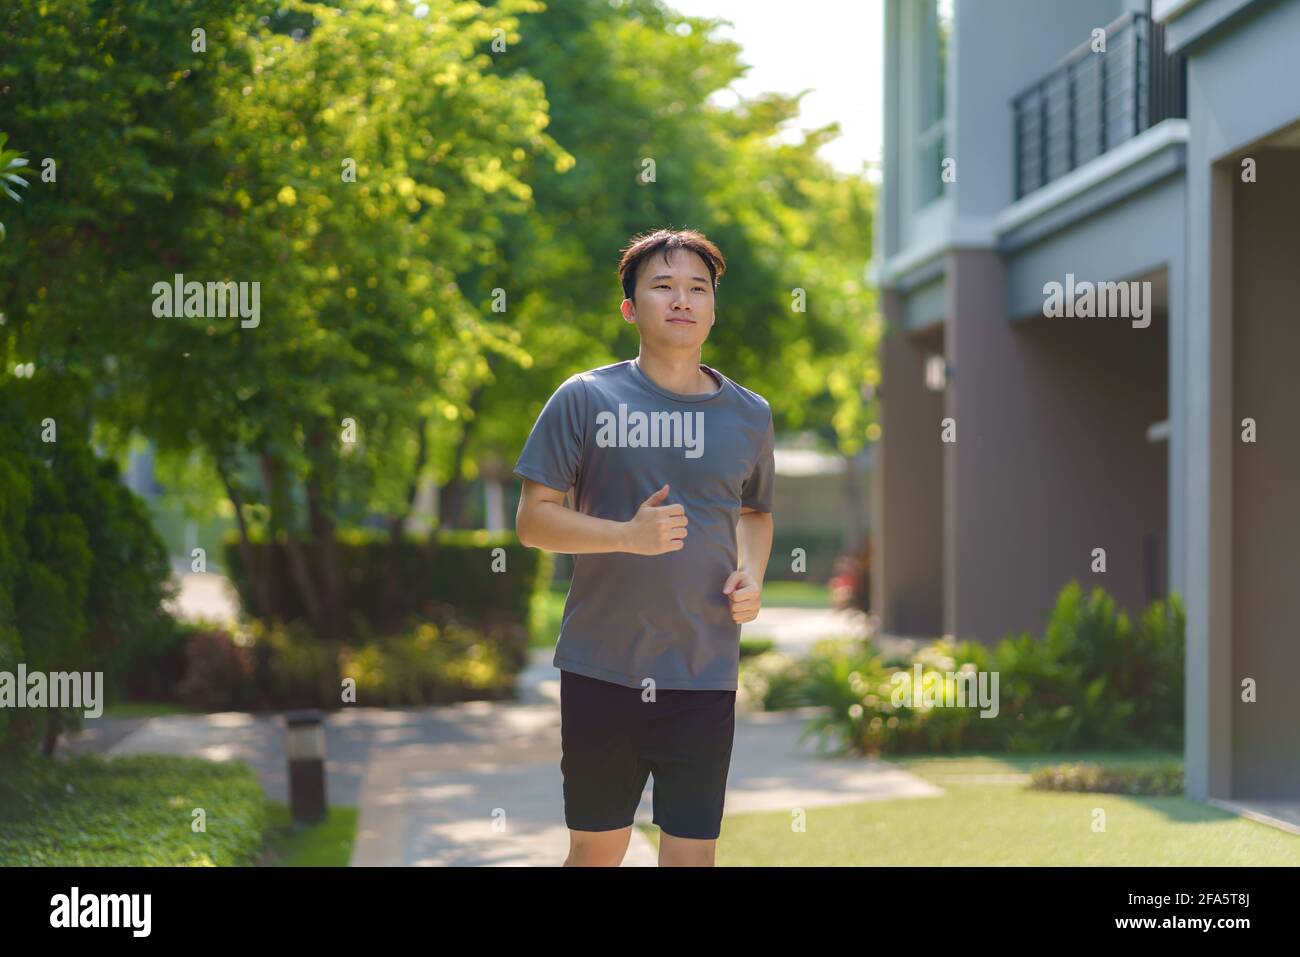 Der asiatische Mann joggt in der Nachbarschaft für die tägliche Gesundheit und das Wohlbefinden, sowohl körperlich als auch geistig, und ist ein einfaches Gegenmittel gegen den täglichen Stress und gegen Socia Stockfoto